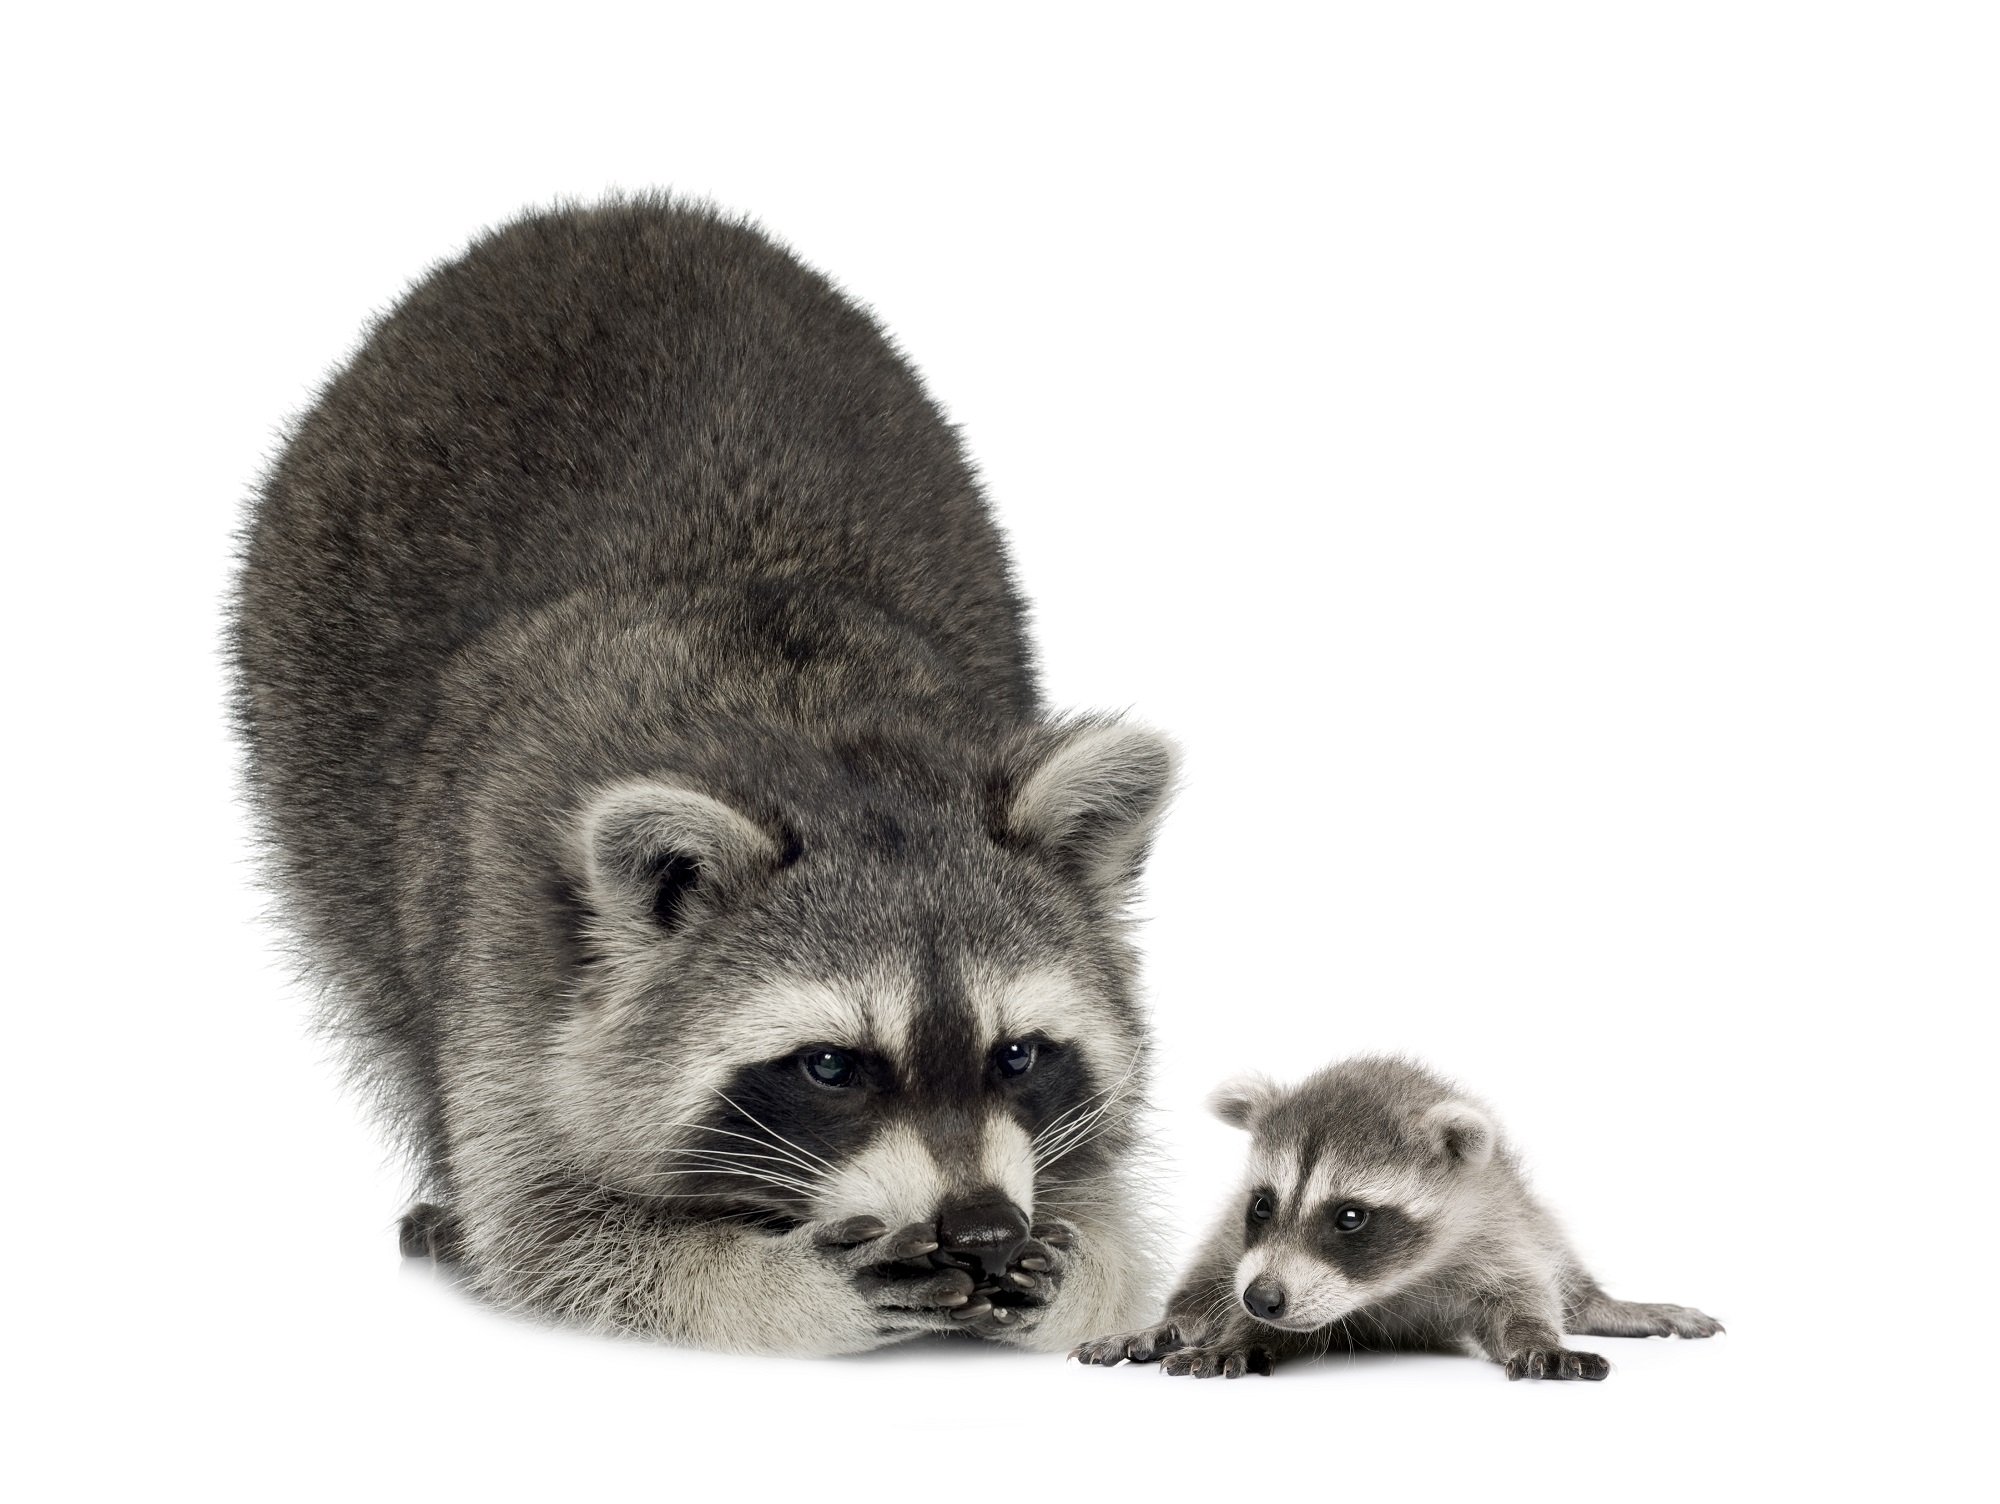 Juvenile Raccoons